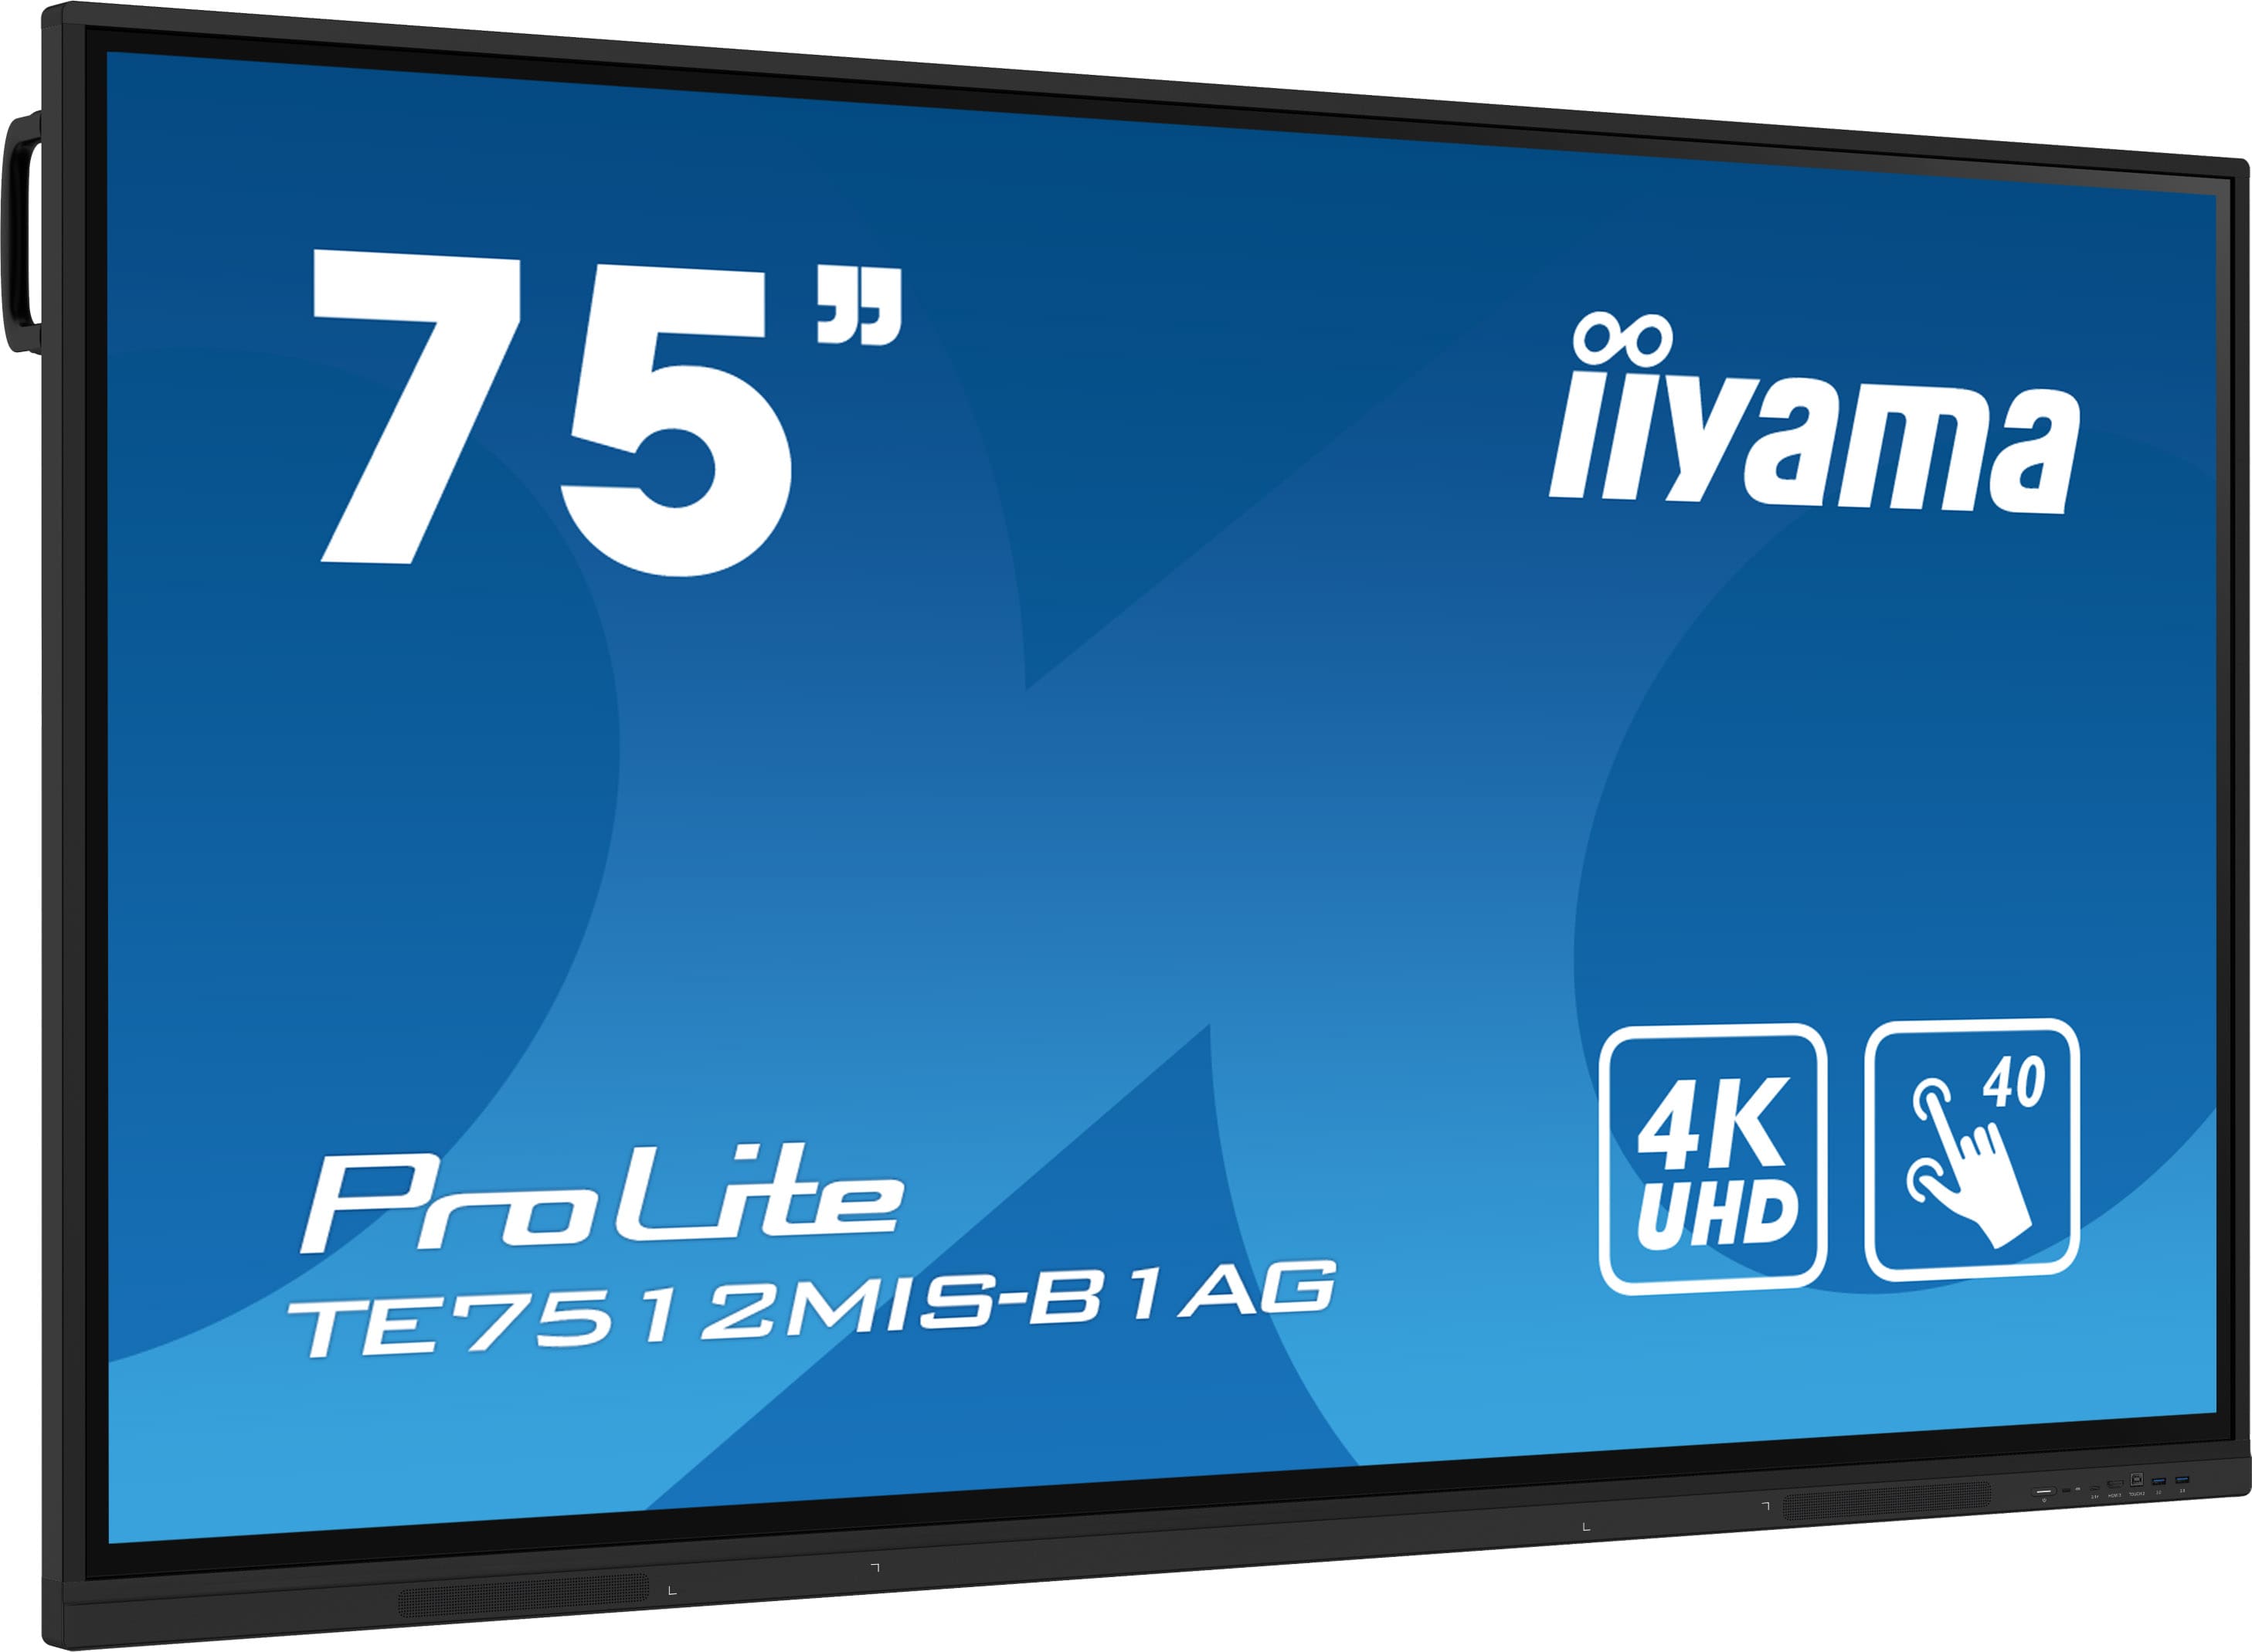 Iiyama ProLite TE7512MIS-B1AG | Interaktives 75" LCD Touchscreen-Display mit 4K-Auflösung, integrierter Whiteboard-Software und Benutzerprofilen